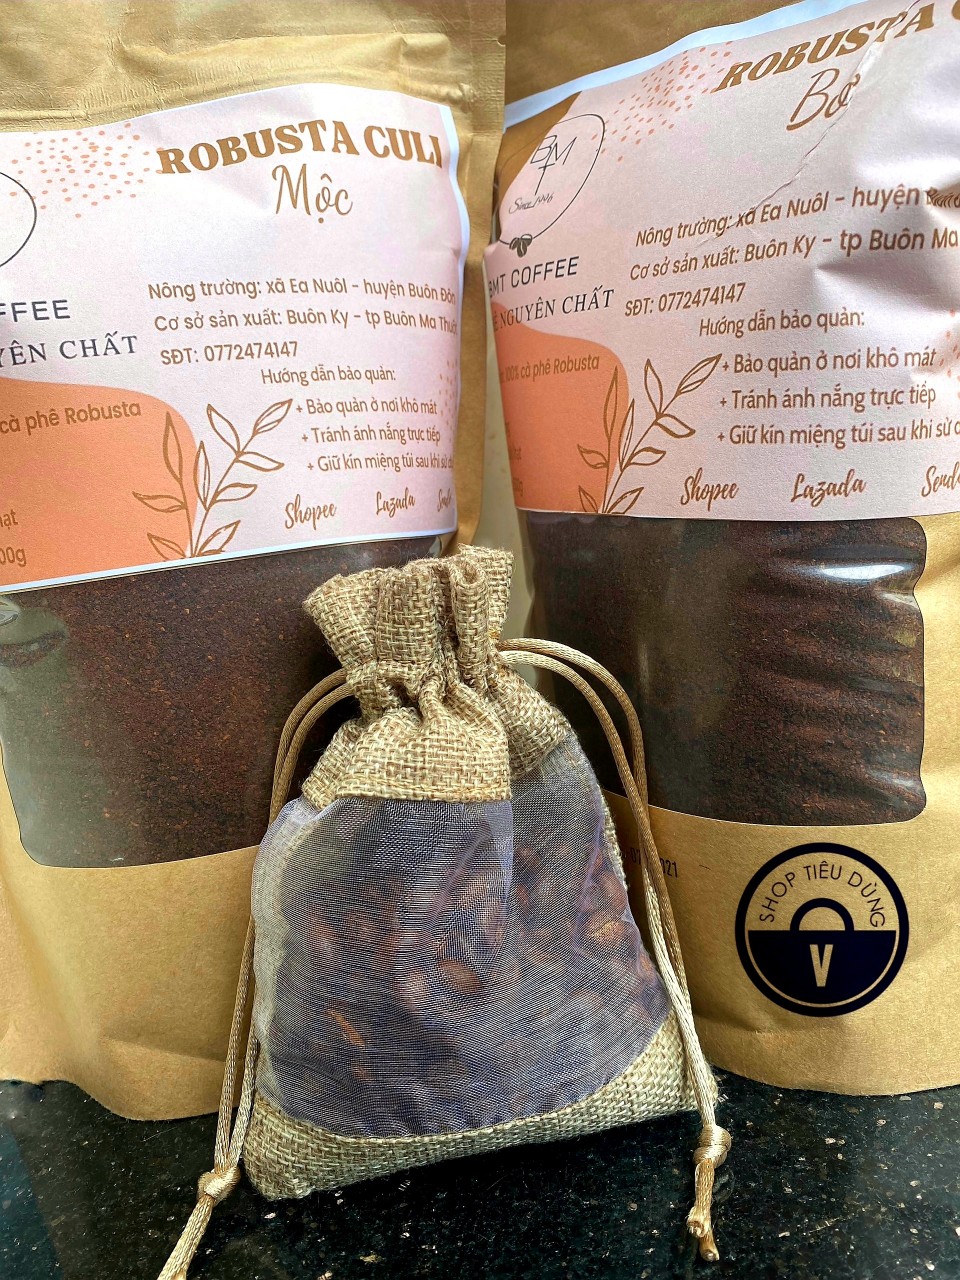 (1kg) Cà phê Robusta Culi nguyên chất rang BƠ 100% - Robusta Buôn Ma Thuột cafe từ Đắk Lắk 1 kg